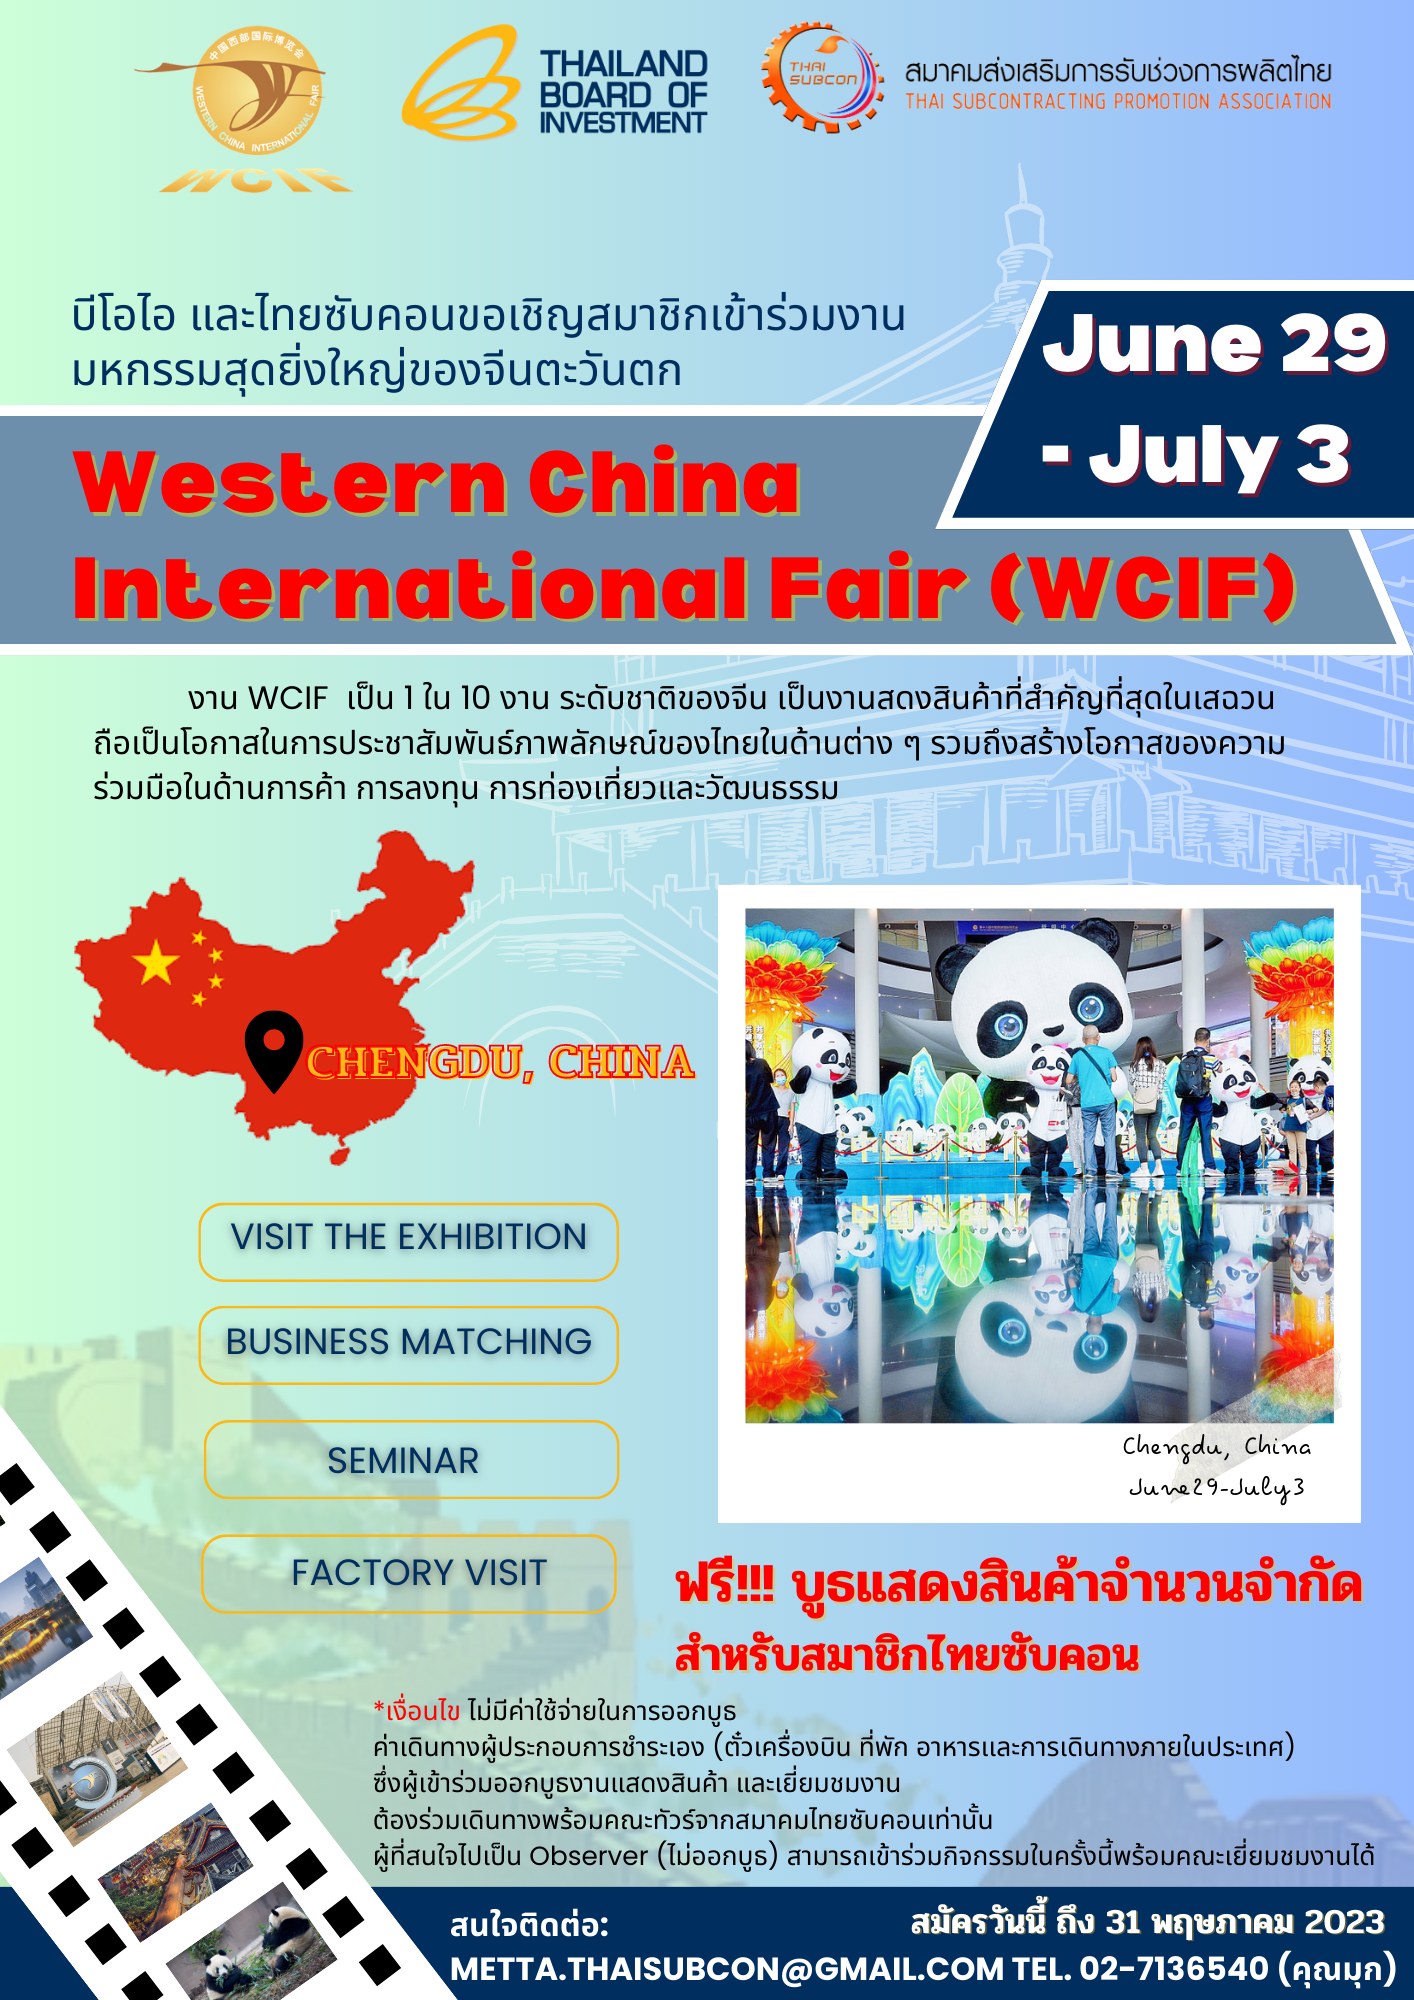 ฟรี ค่าคูหา   BOI และสมาคม Thai Subcon ขอเชิญสมาชิกสมาคมเข้าร่วมออกบูธ และเยี่ยมชมงานแสดงสินค้า  Western China International Fair (WCIF-) เฉิงตู